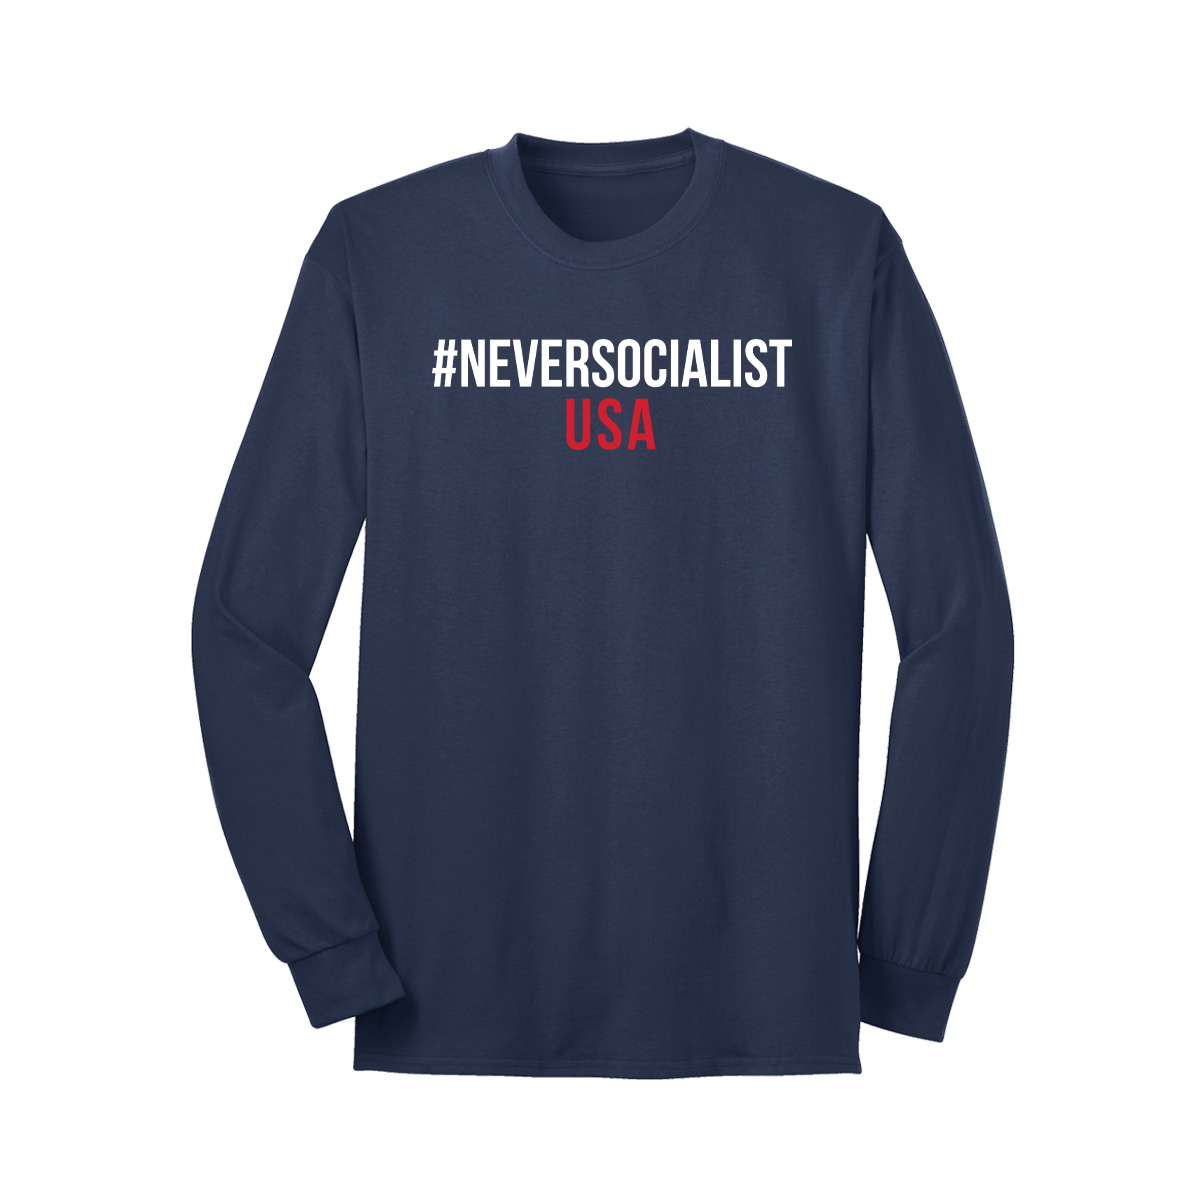 NeverSocialist USA Long Sleeve T Shirt Navy